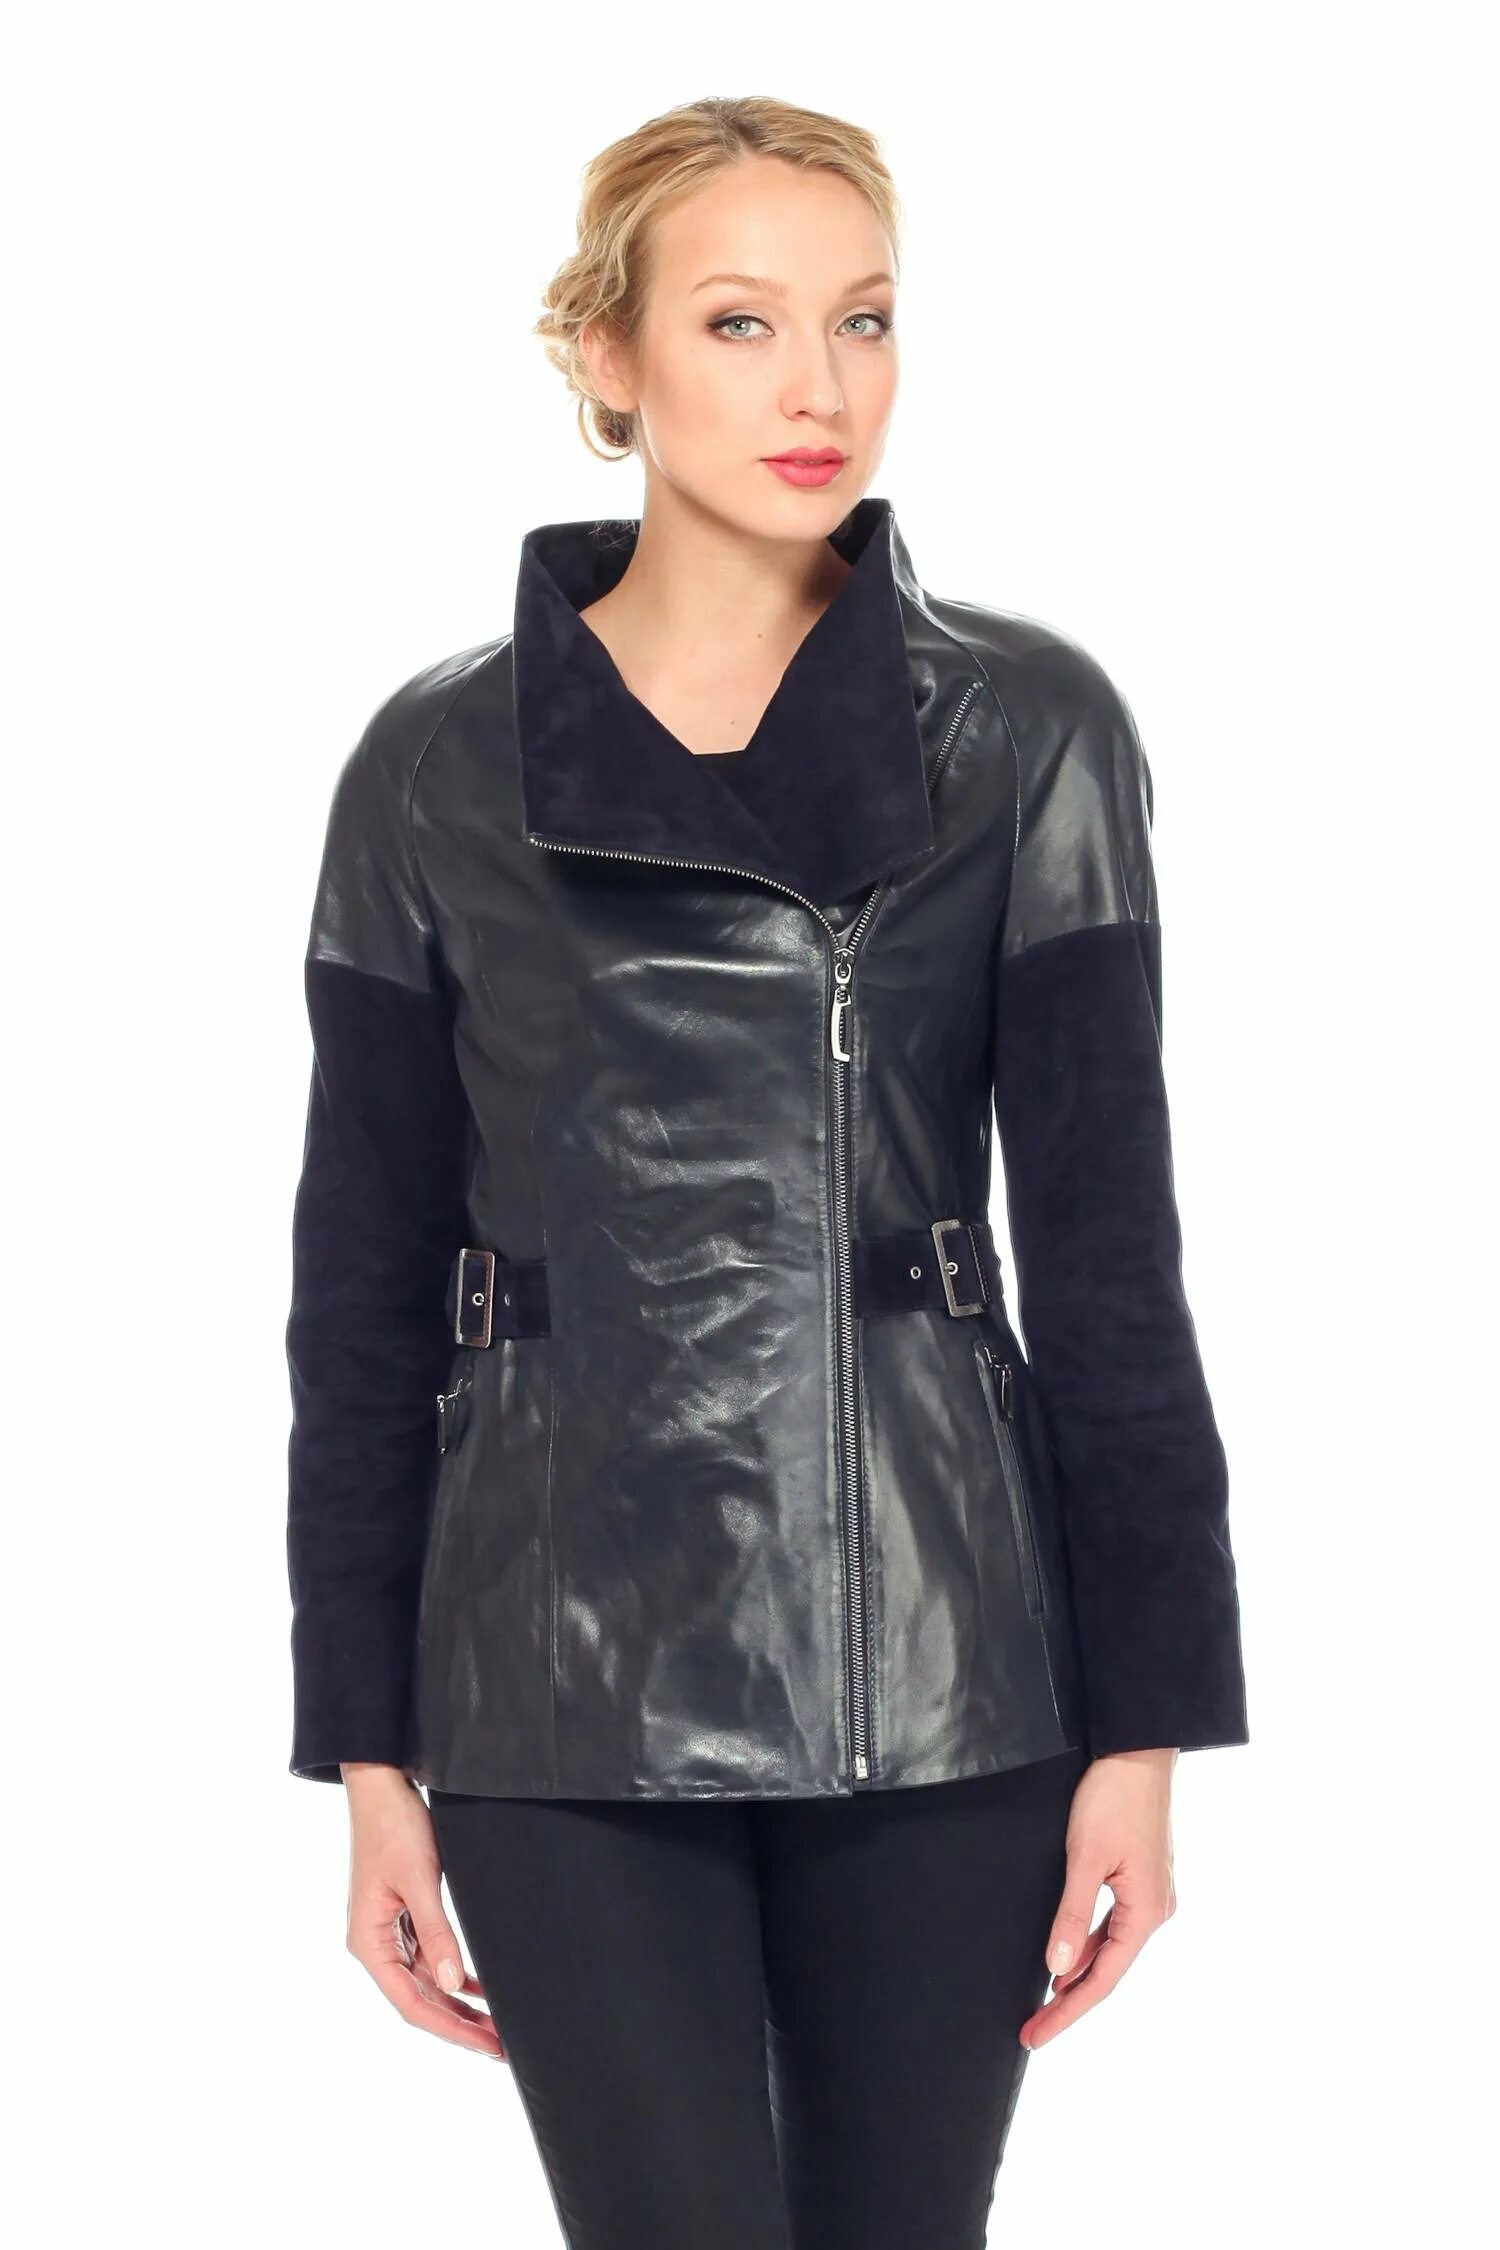 Натуральные комбинированные. Кожаная куртка комбинированная. Комбинированные кожаные куртки женские. Куртка комбинированная с кожей женская. Куртки кожаные комбинированные с замшей.